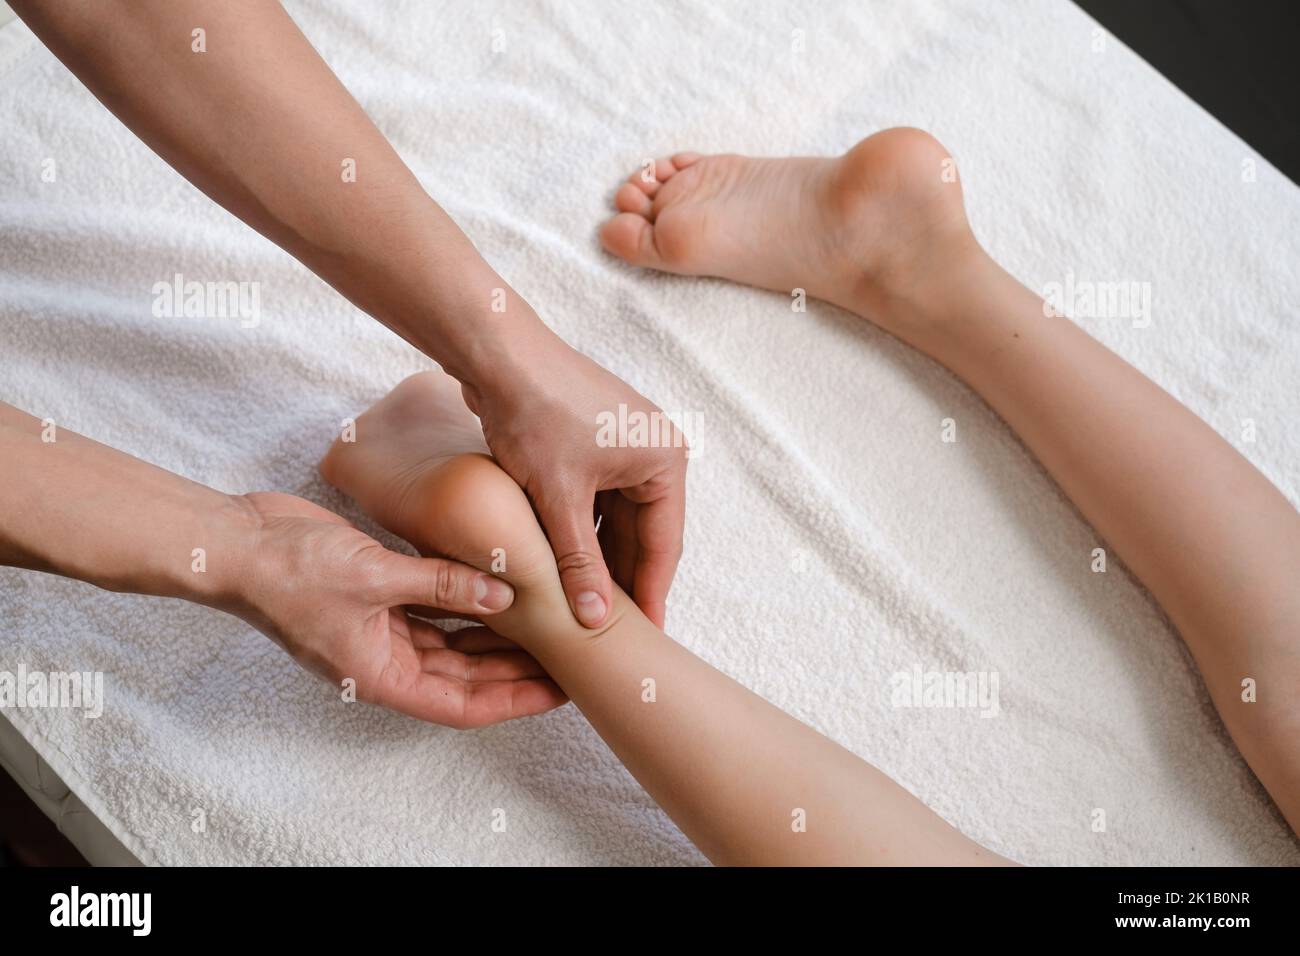 Trattamento di massaggio plantare per bambini con massaggiatore professionista nel resort termale. Benessere, sollievo dallo stress e concetto di assistenza sanitaria Foto Stock